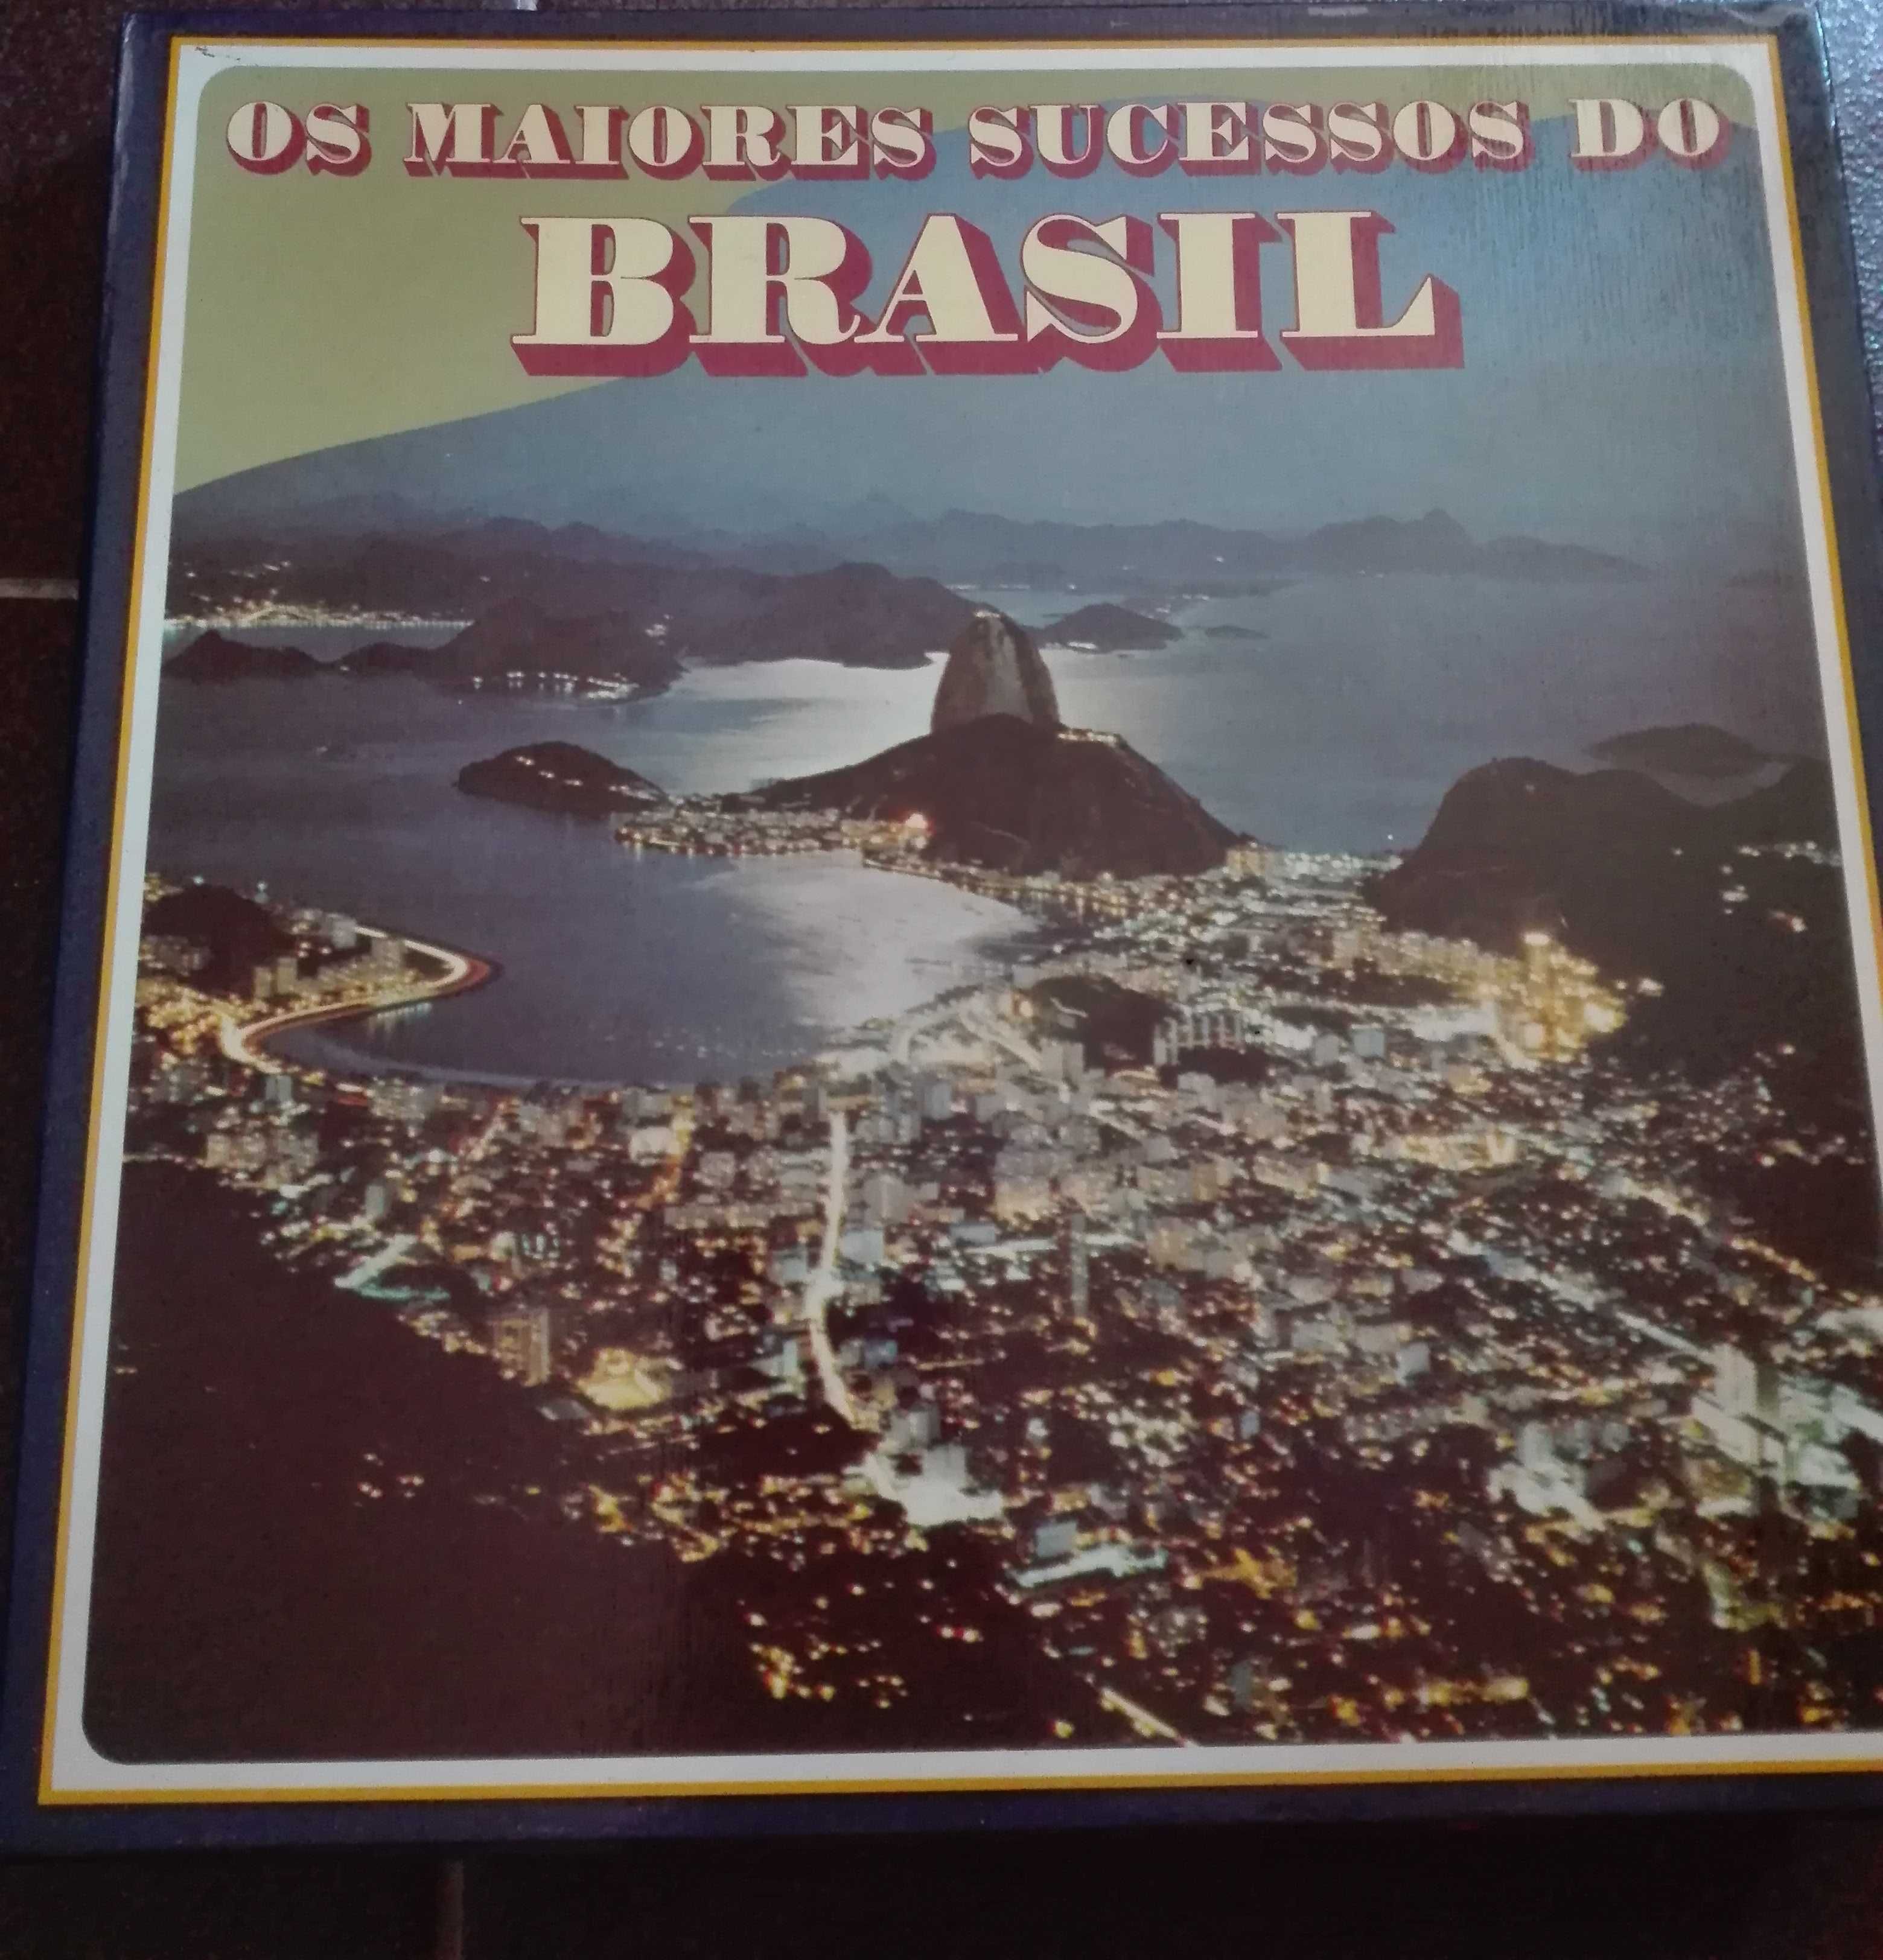 Discos de vinil - Os maiores sucessos do Brasil